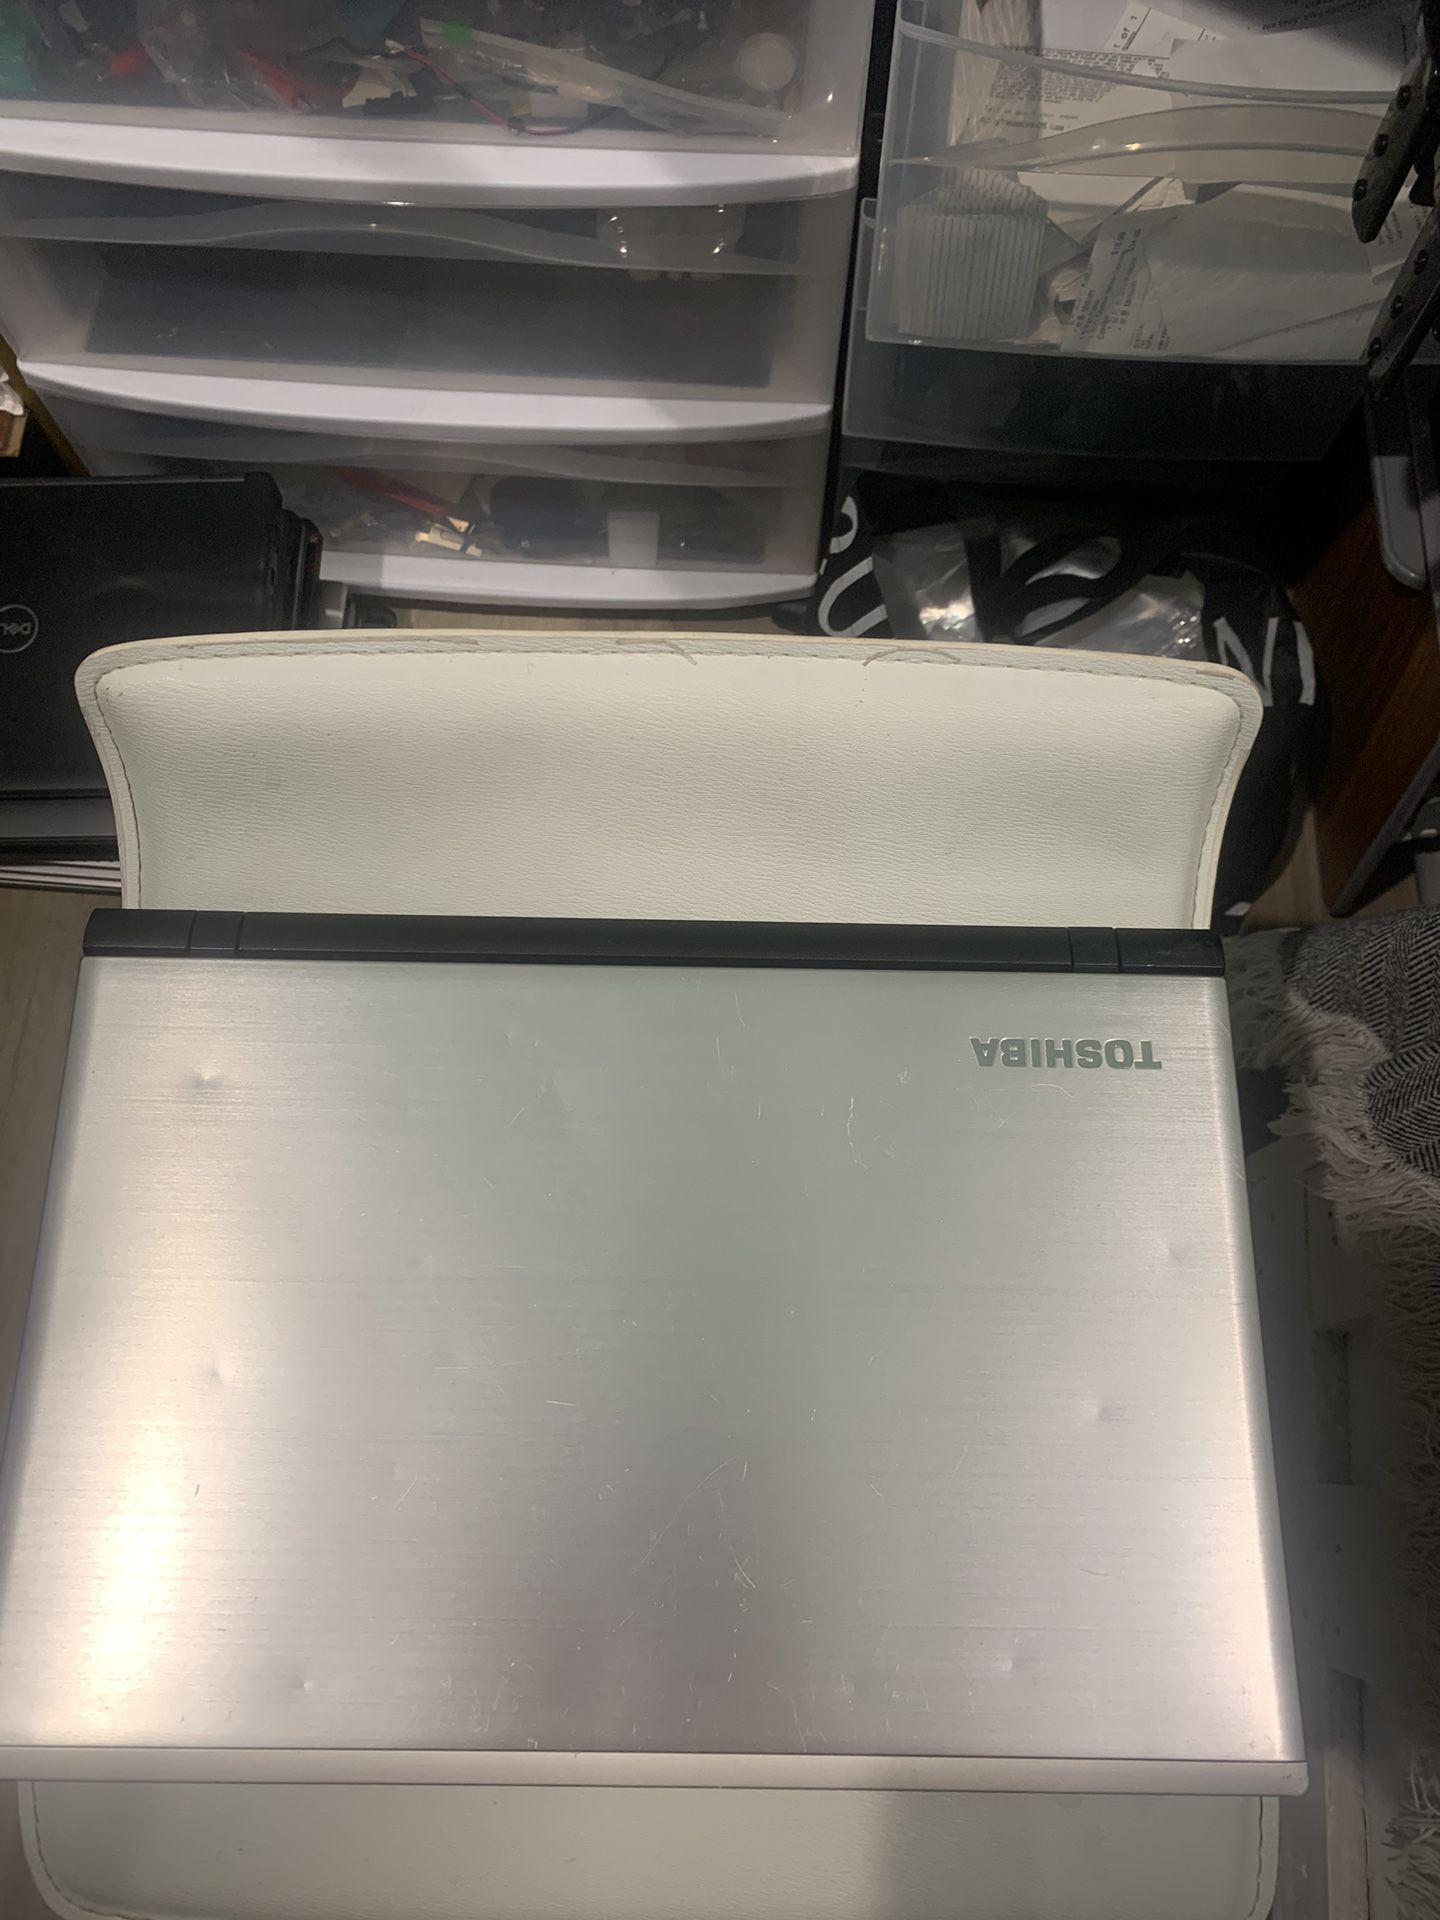 Toshiba Satellite Laptop #24044